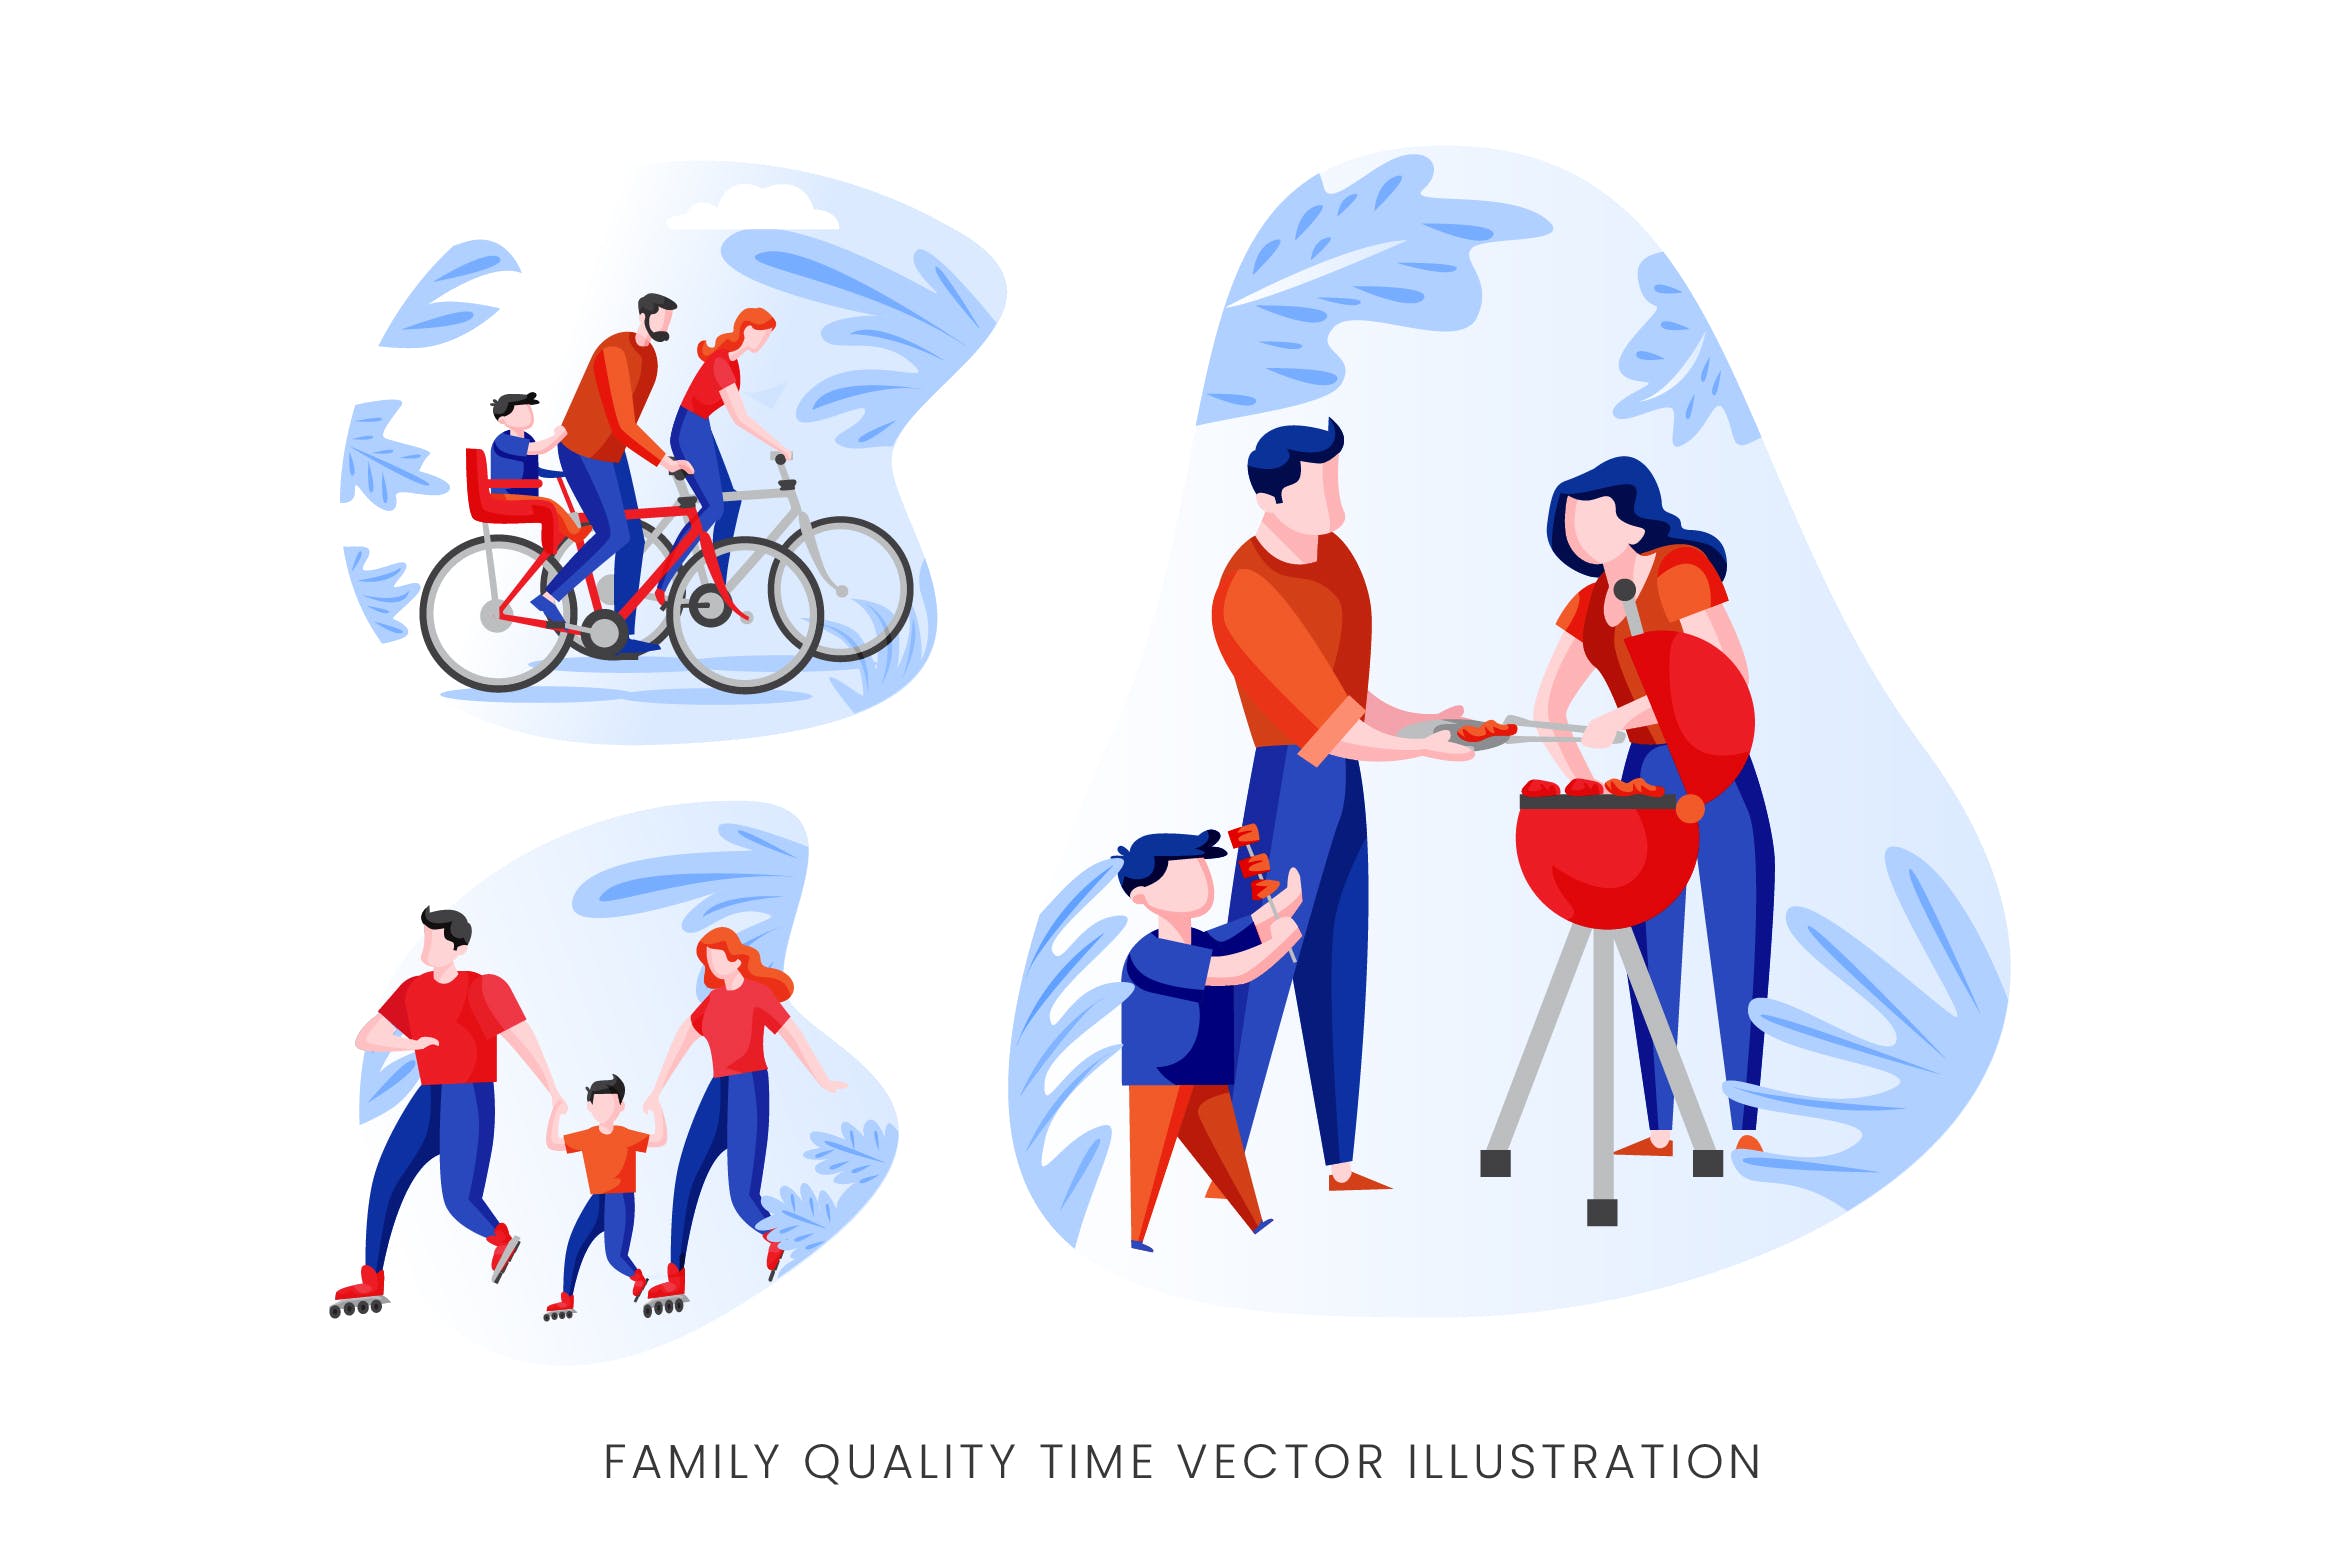 亲子活动时光矢量手绘素材中国精选设计素材 Family Quality Time Vector Character Set插图